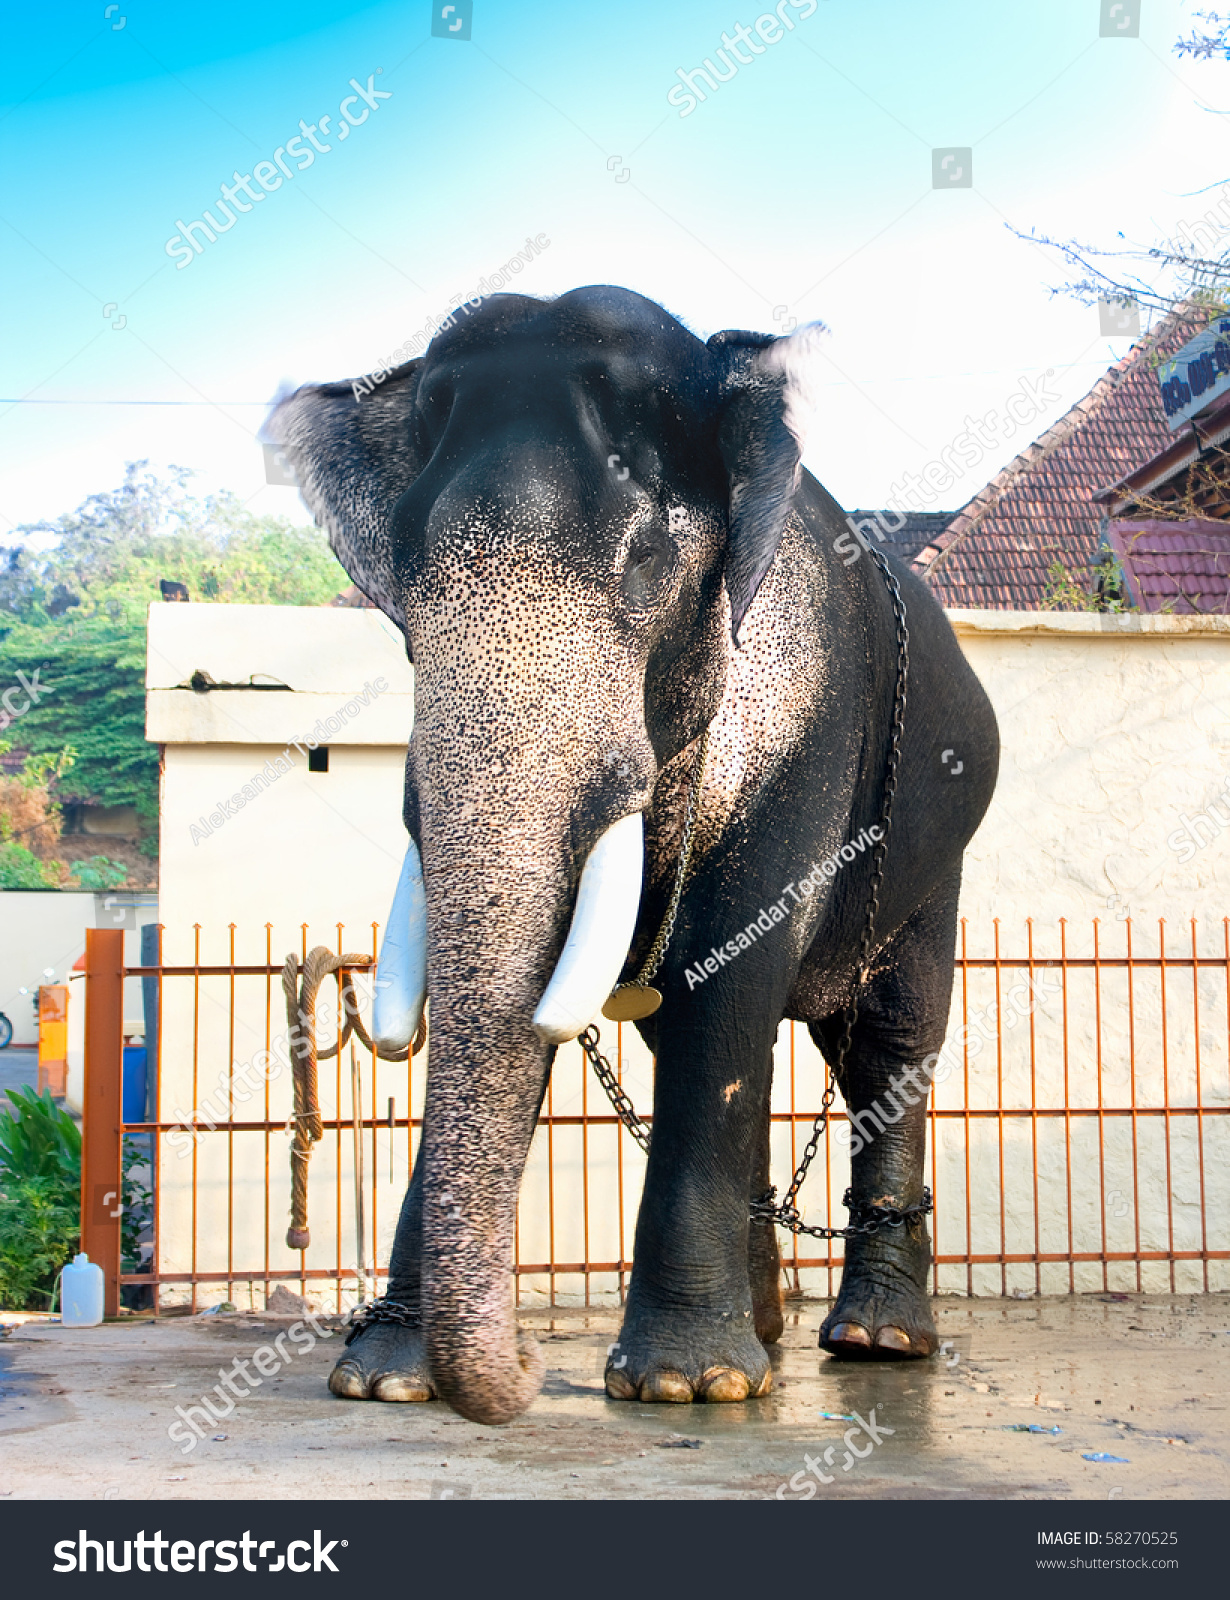 Beautiful giant elephant photo